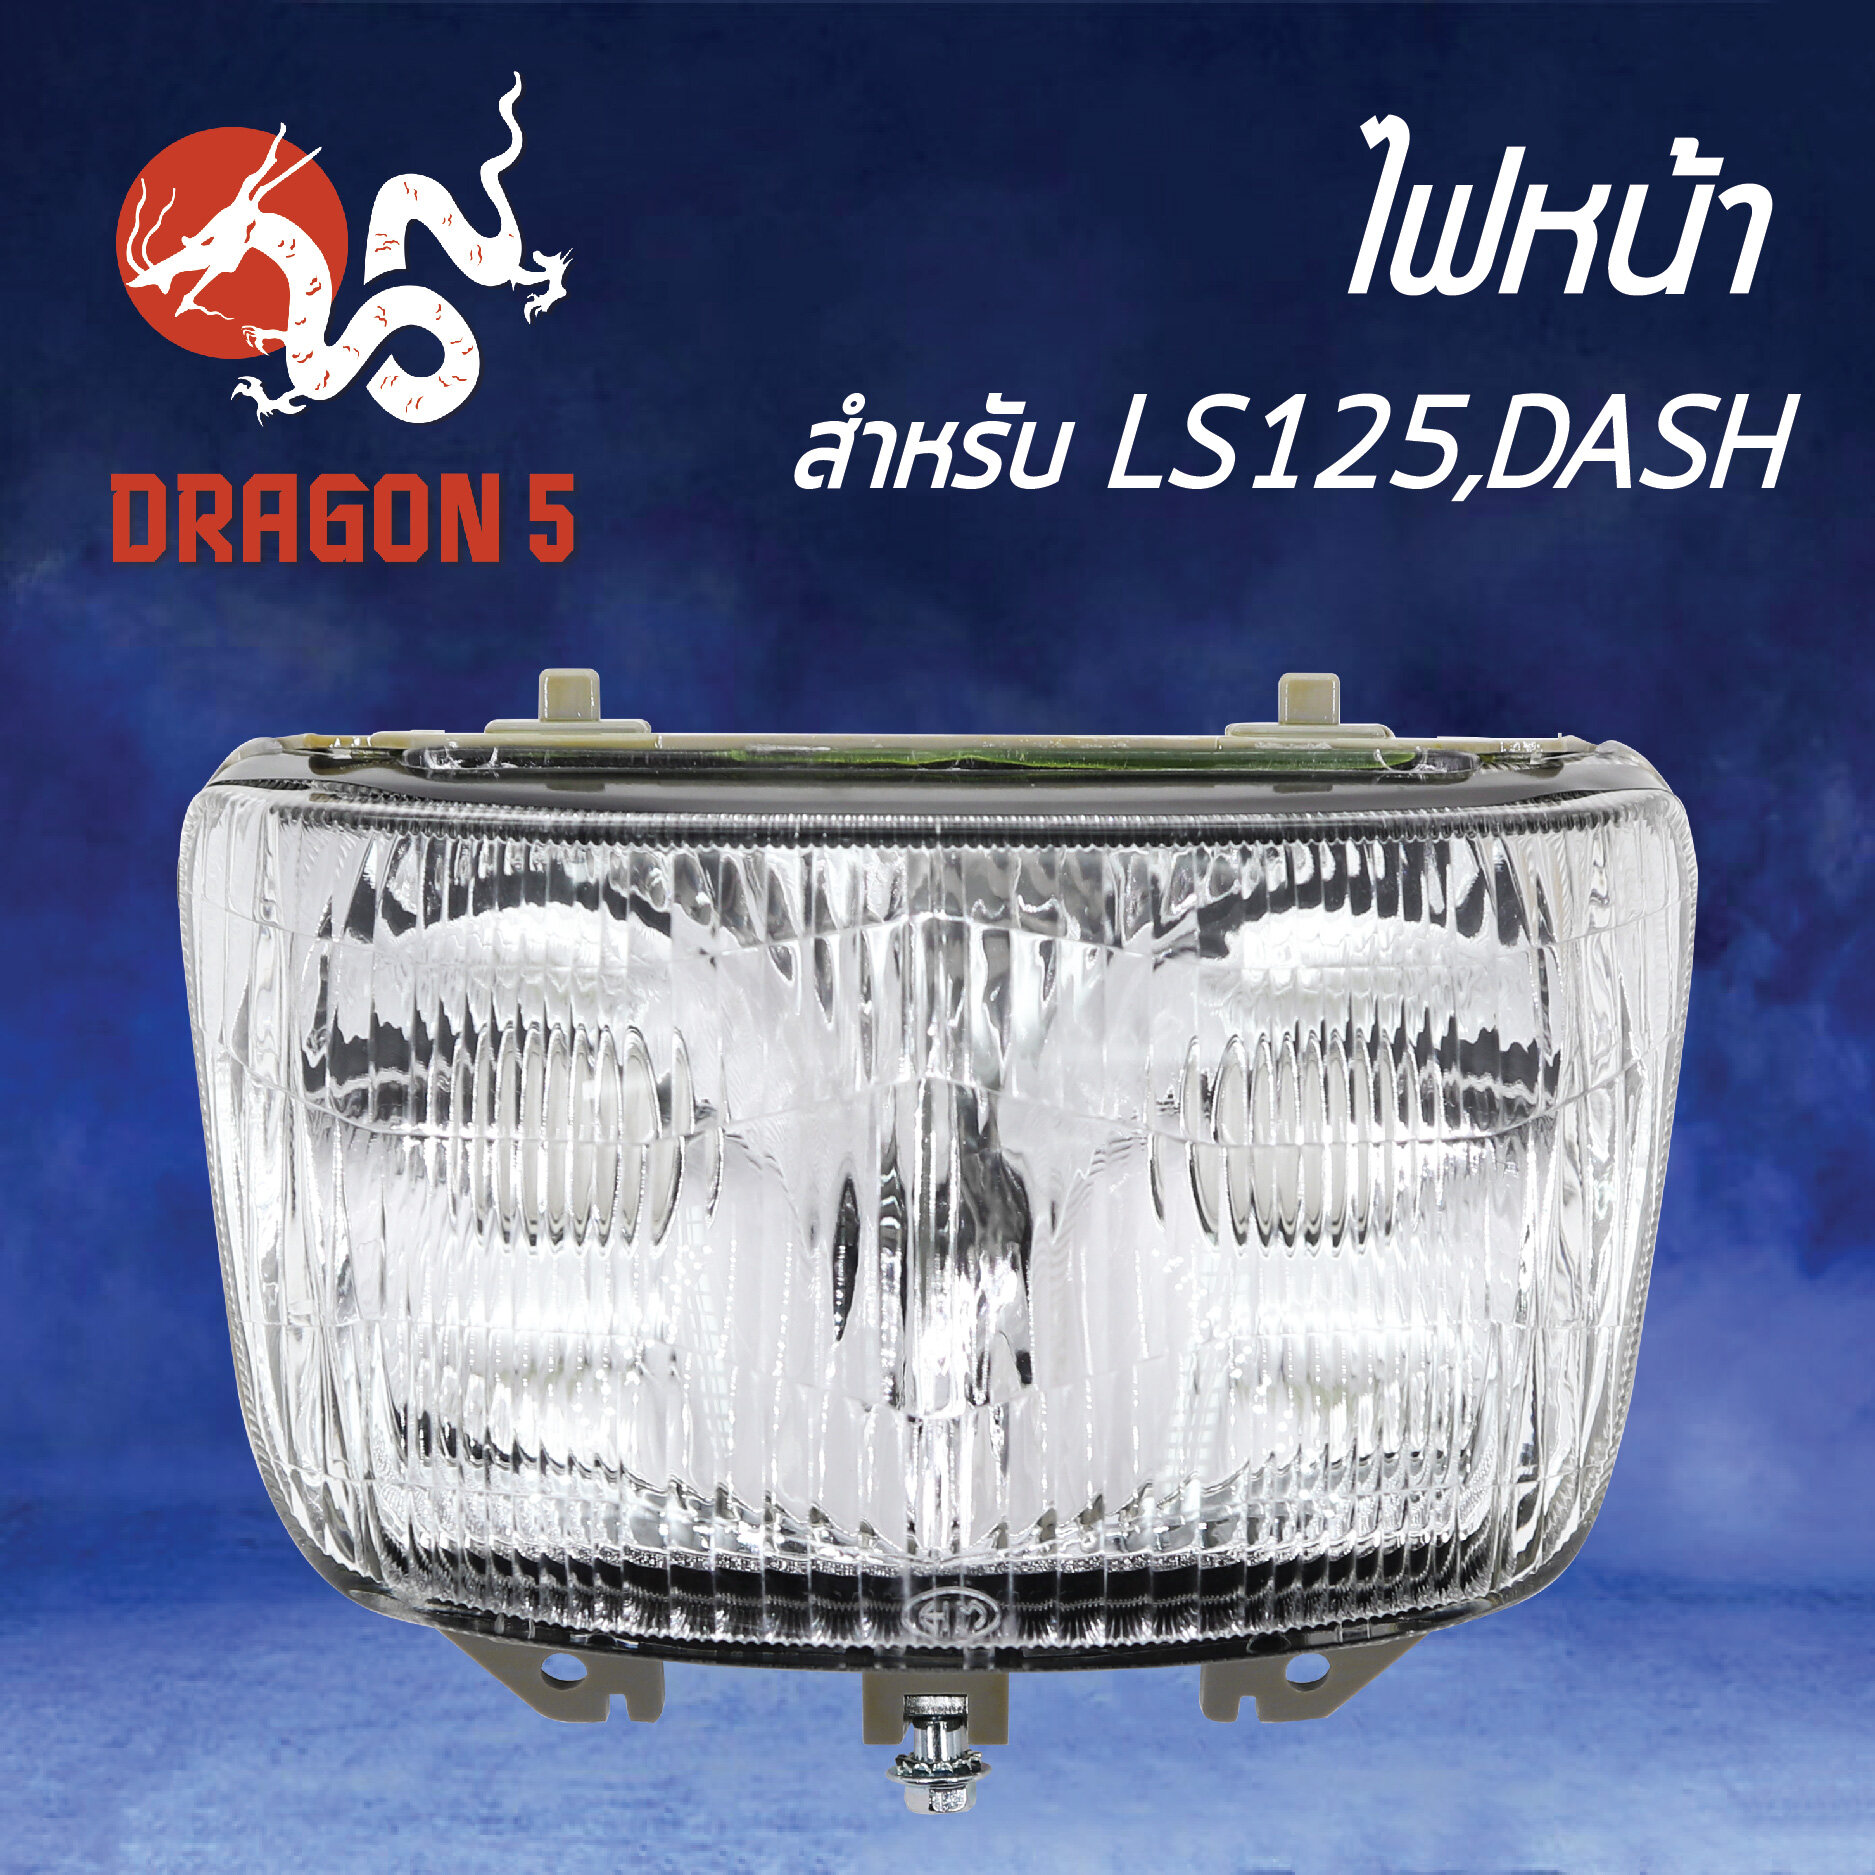 ไฟหน้า LS125,DASH เดิมติดรถ, โคมไฟหน้า LS125,แดช,DASH, ไฟหน้า LS125,DASH 2000-039-00 HMA